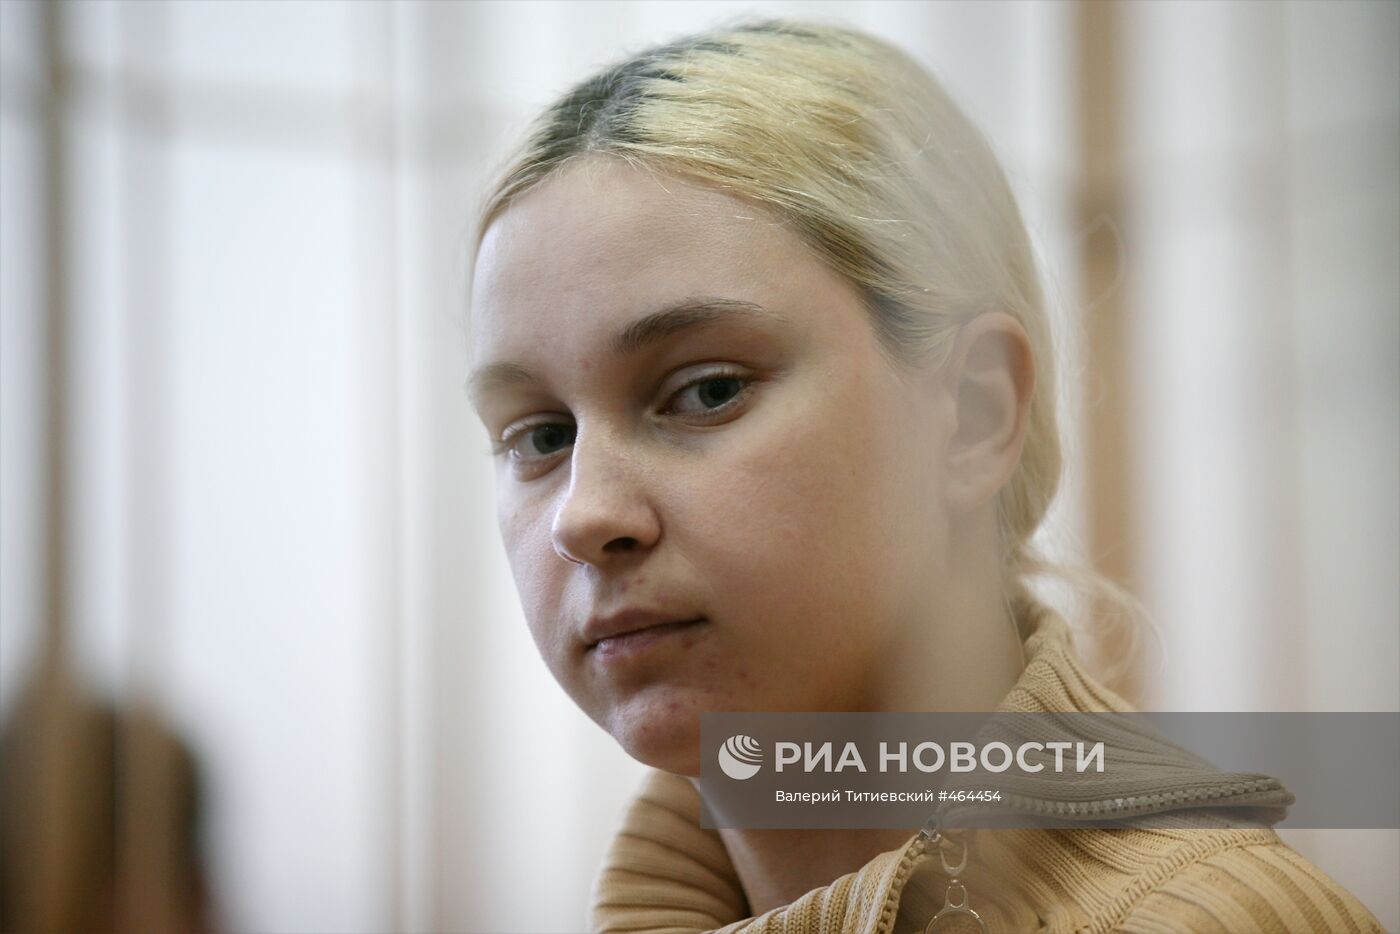 Оглашение приговора по делу Ольги Мельниченко в Новосибирске